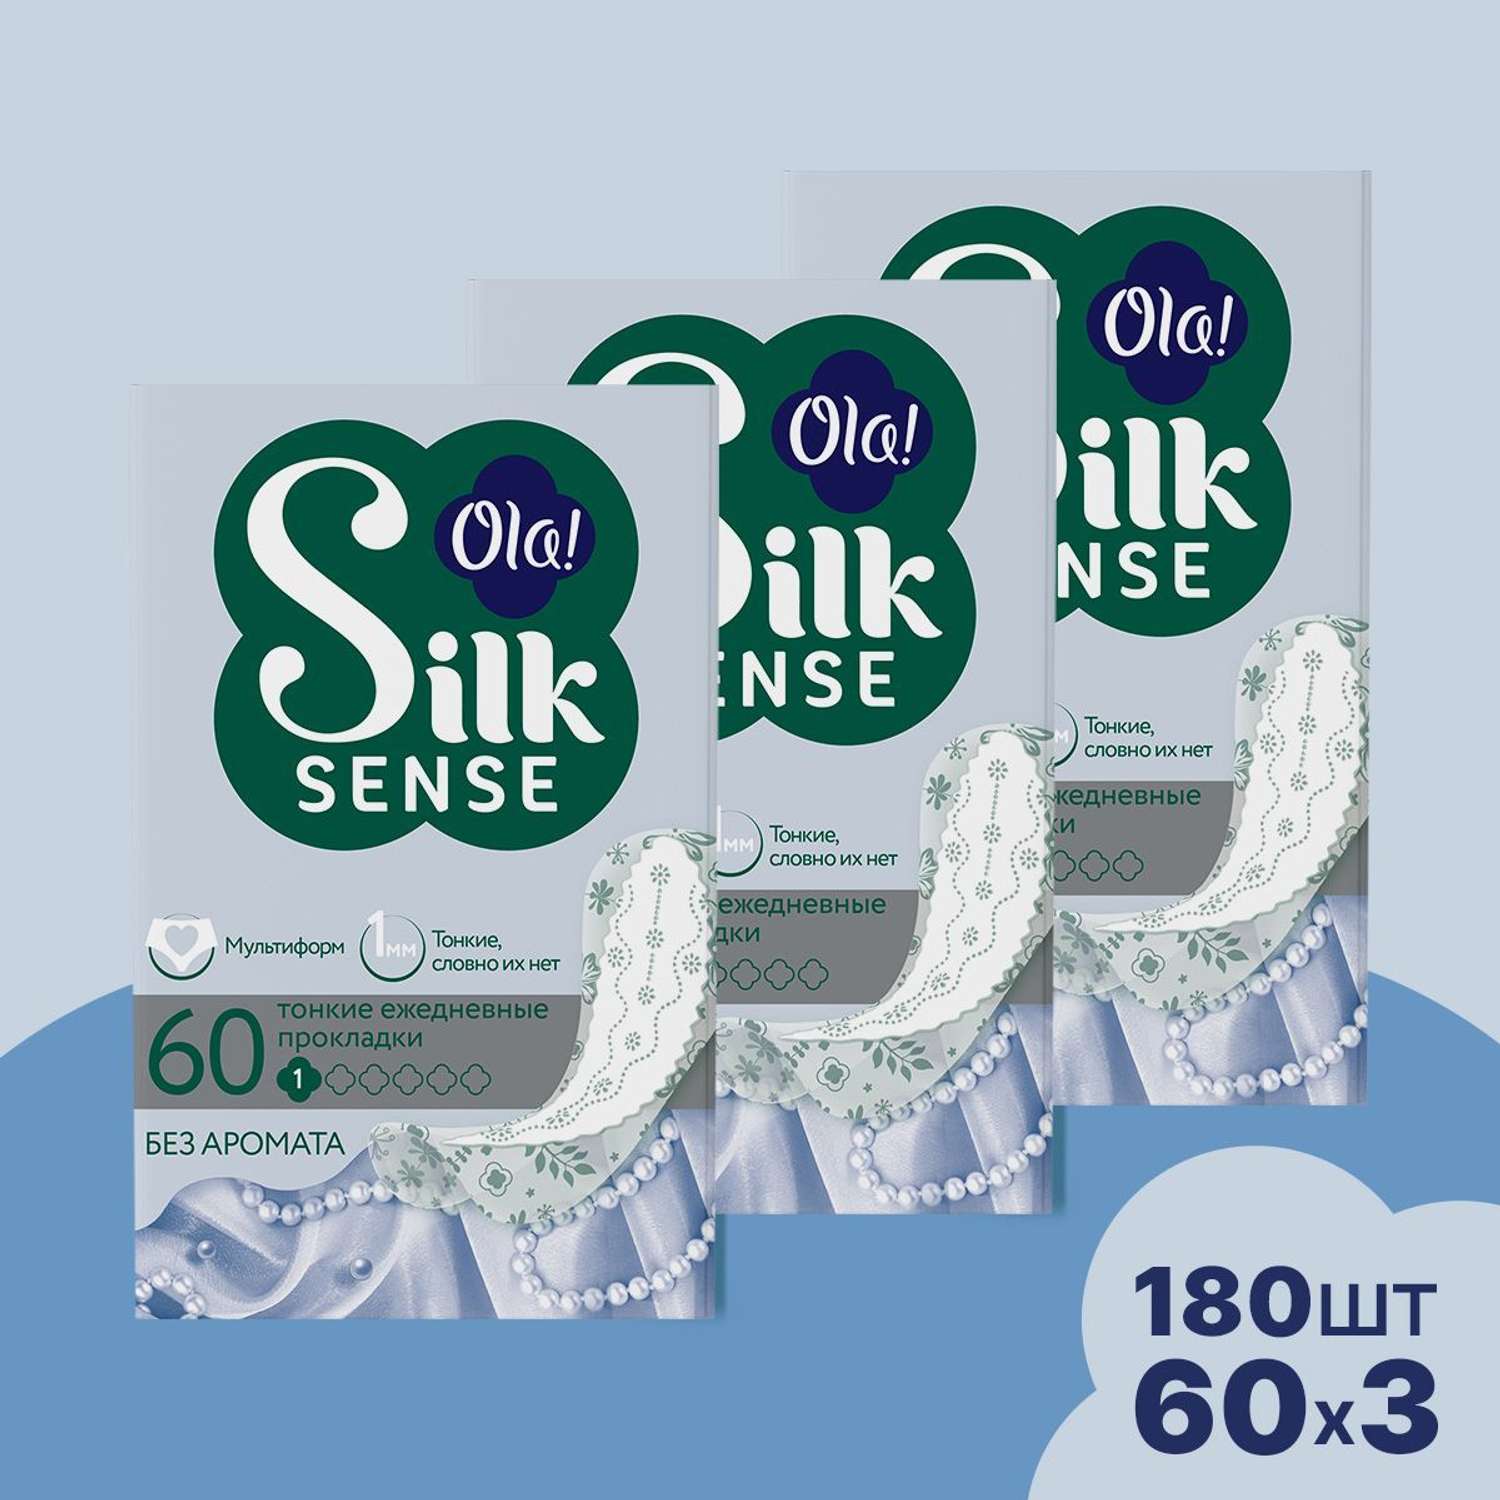 Ежедневные прокладки Ola! Silk Sense Light ультратонкие без аромата 180 шт 3 уп по 60 шт - фото 1